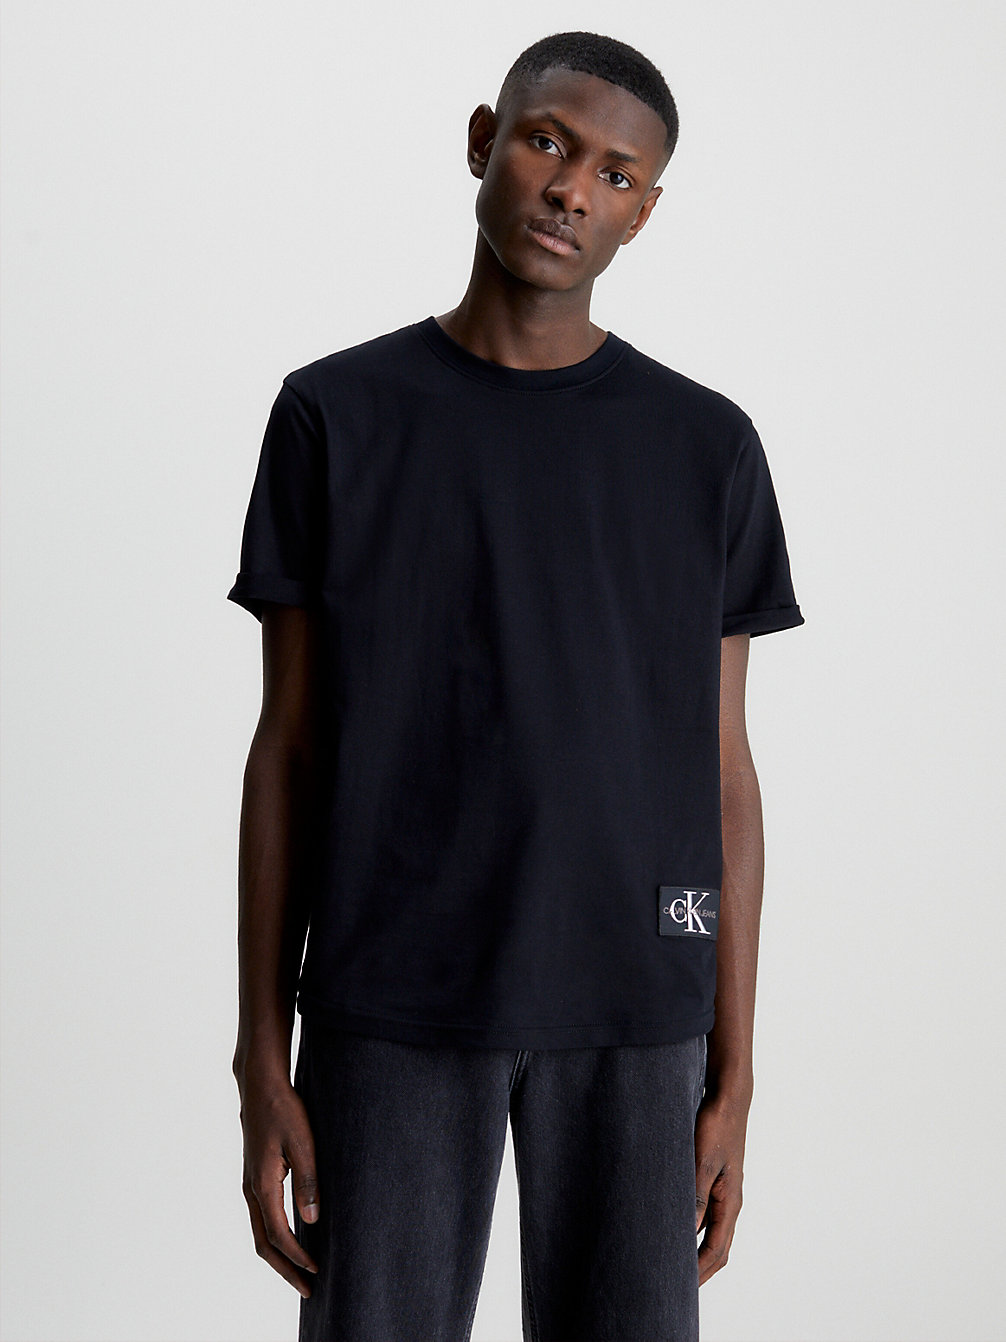 CK BLACK T-Shirt En Coton Bio Avec Insigne undefined hommes Calvin Klein